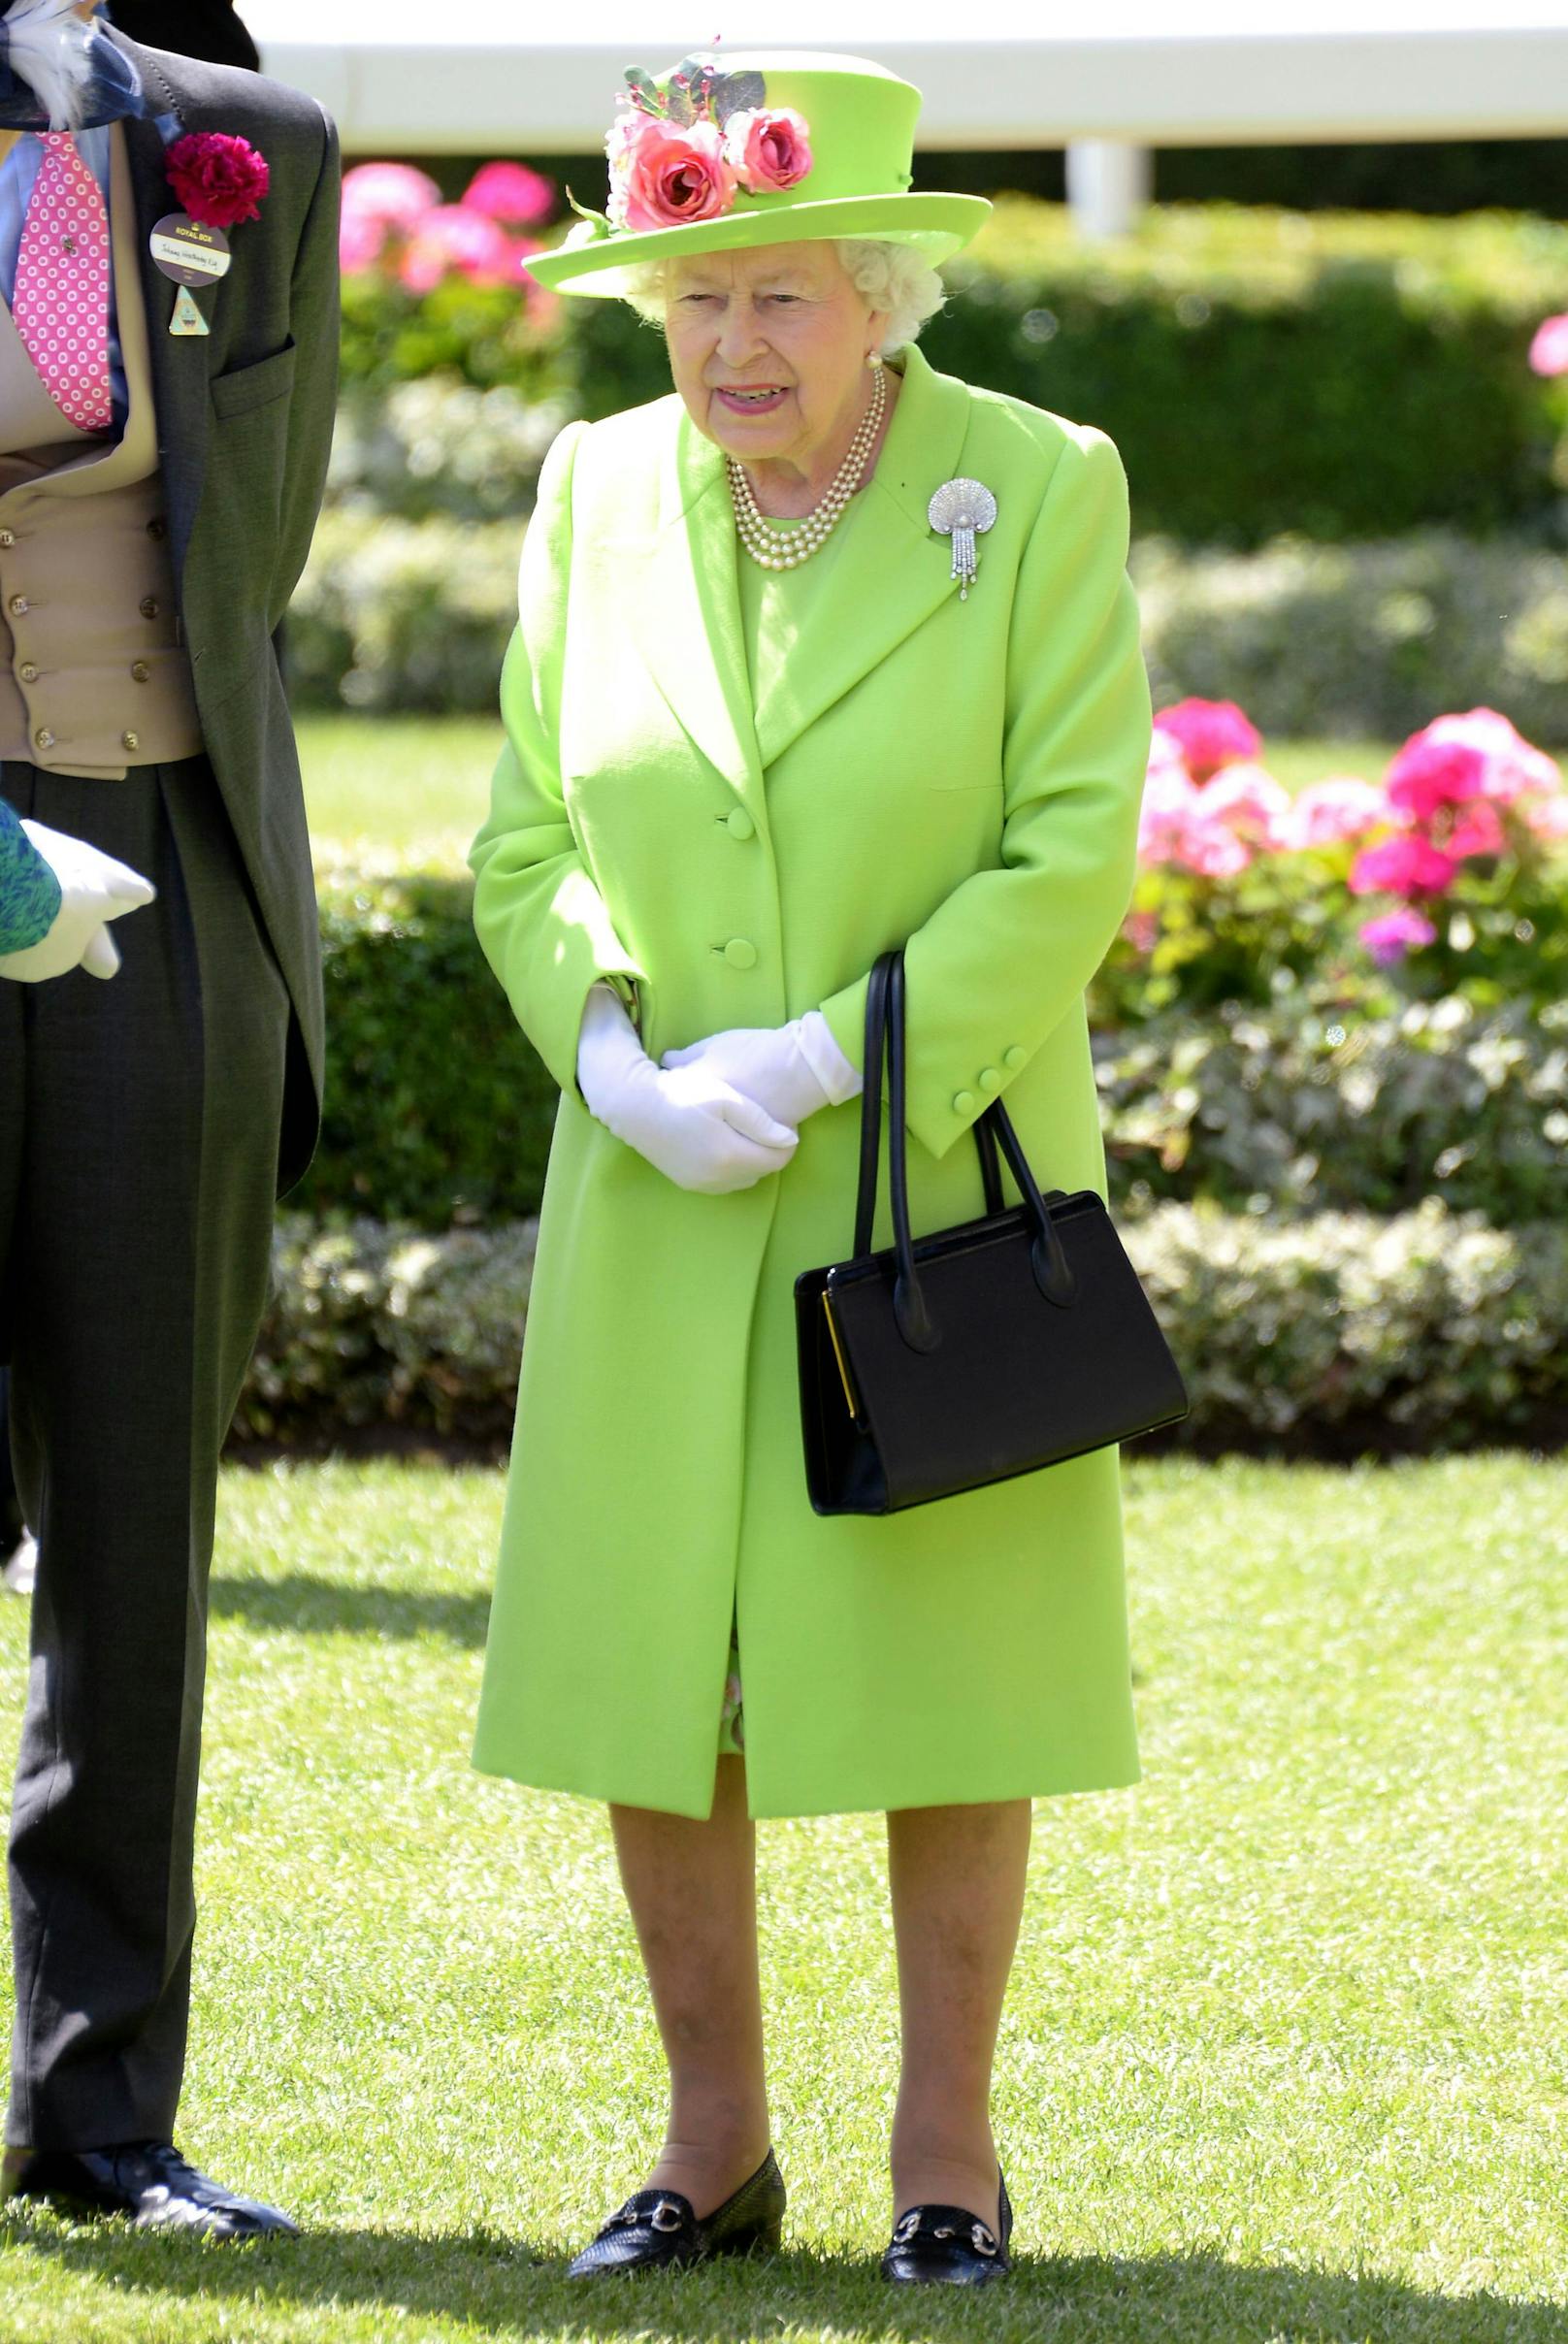 Warum sie auch zu Hause im Buckingham Palast eine Tasche mit sich trägt? "Es ist ein sehr großes Haus"